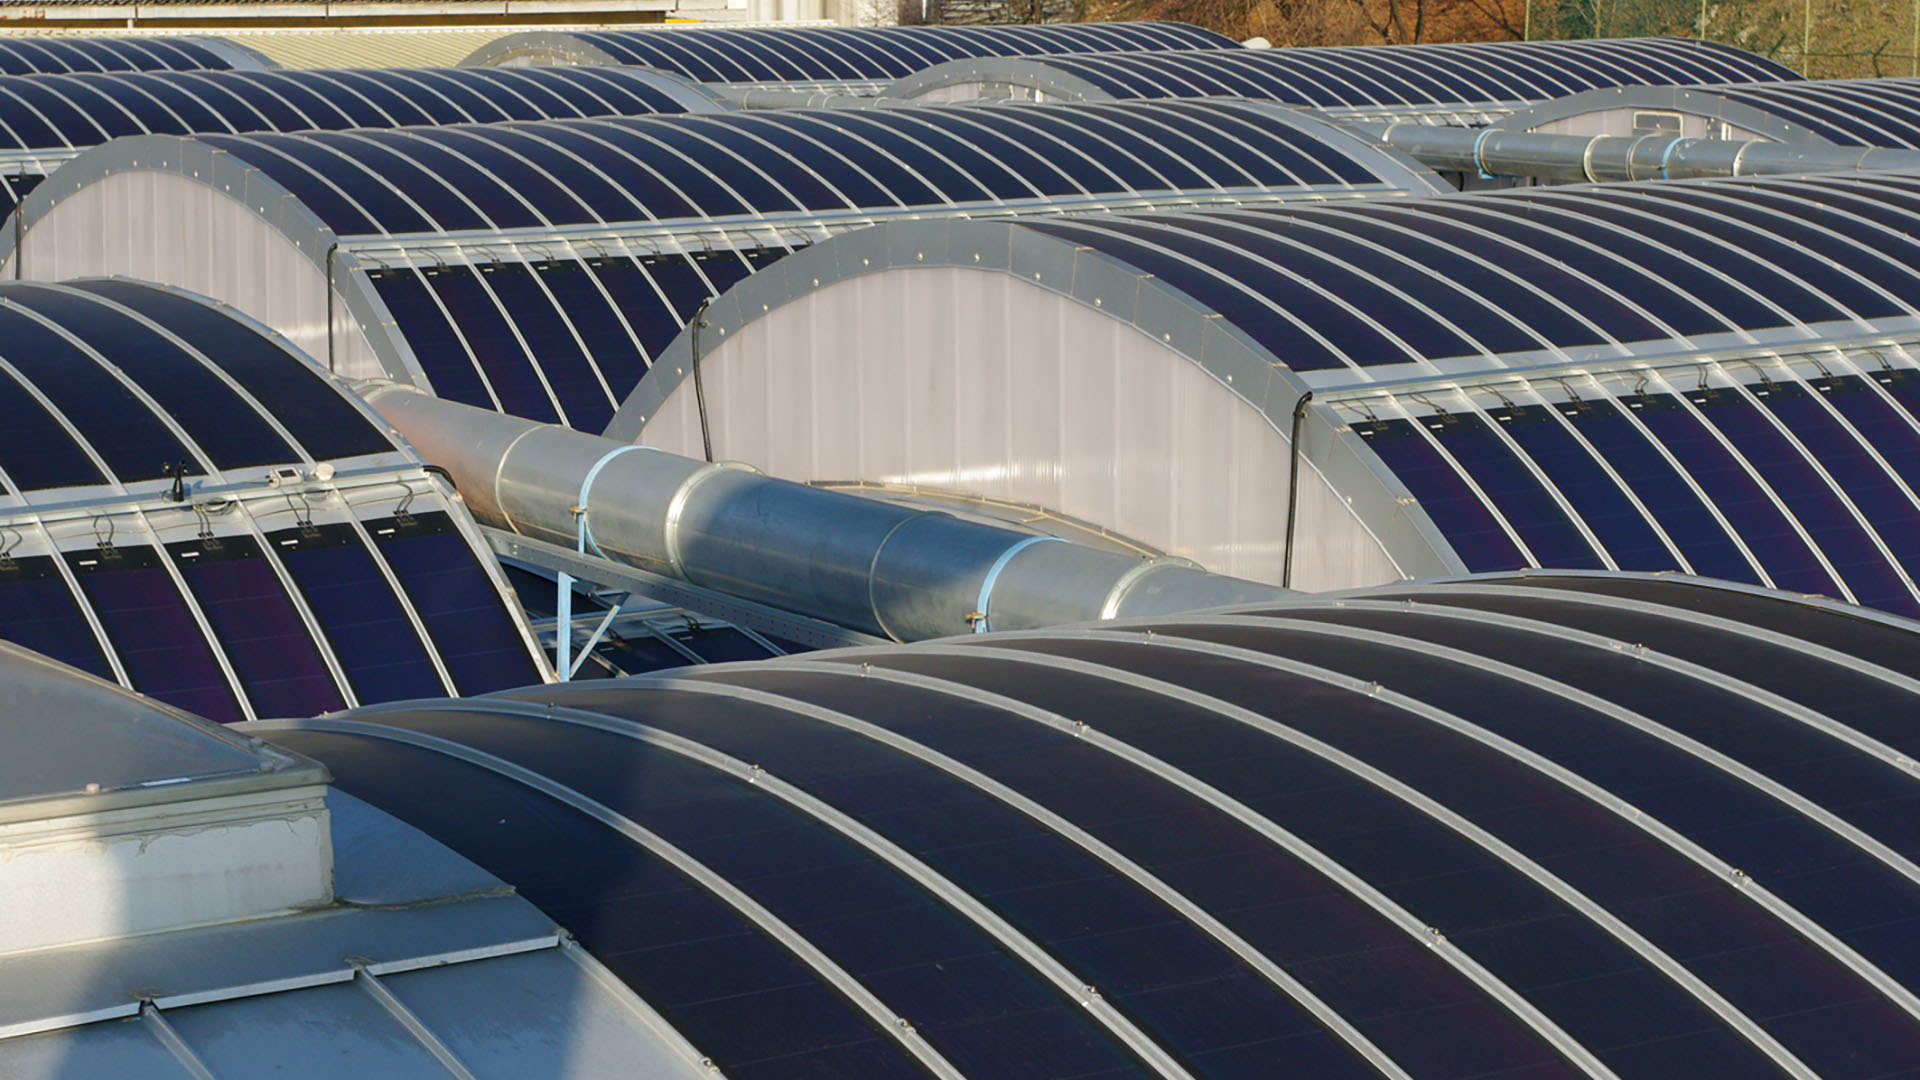 Nel 2022, lo Smart energy management ha portato ad ampliare l'approvvigionamento energetico da fonti rinnovabili: 1.900 metri quadri di pannelli fotovoltaici di nuova generazione hanno permesso di triplicare l'energia ottenuta con il solare